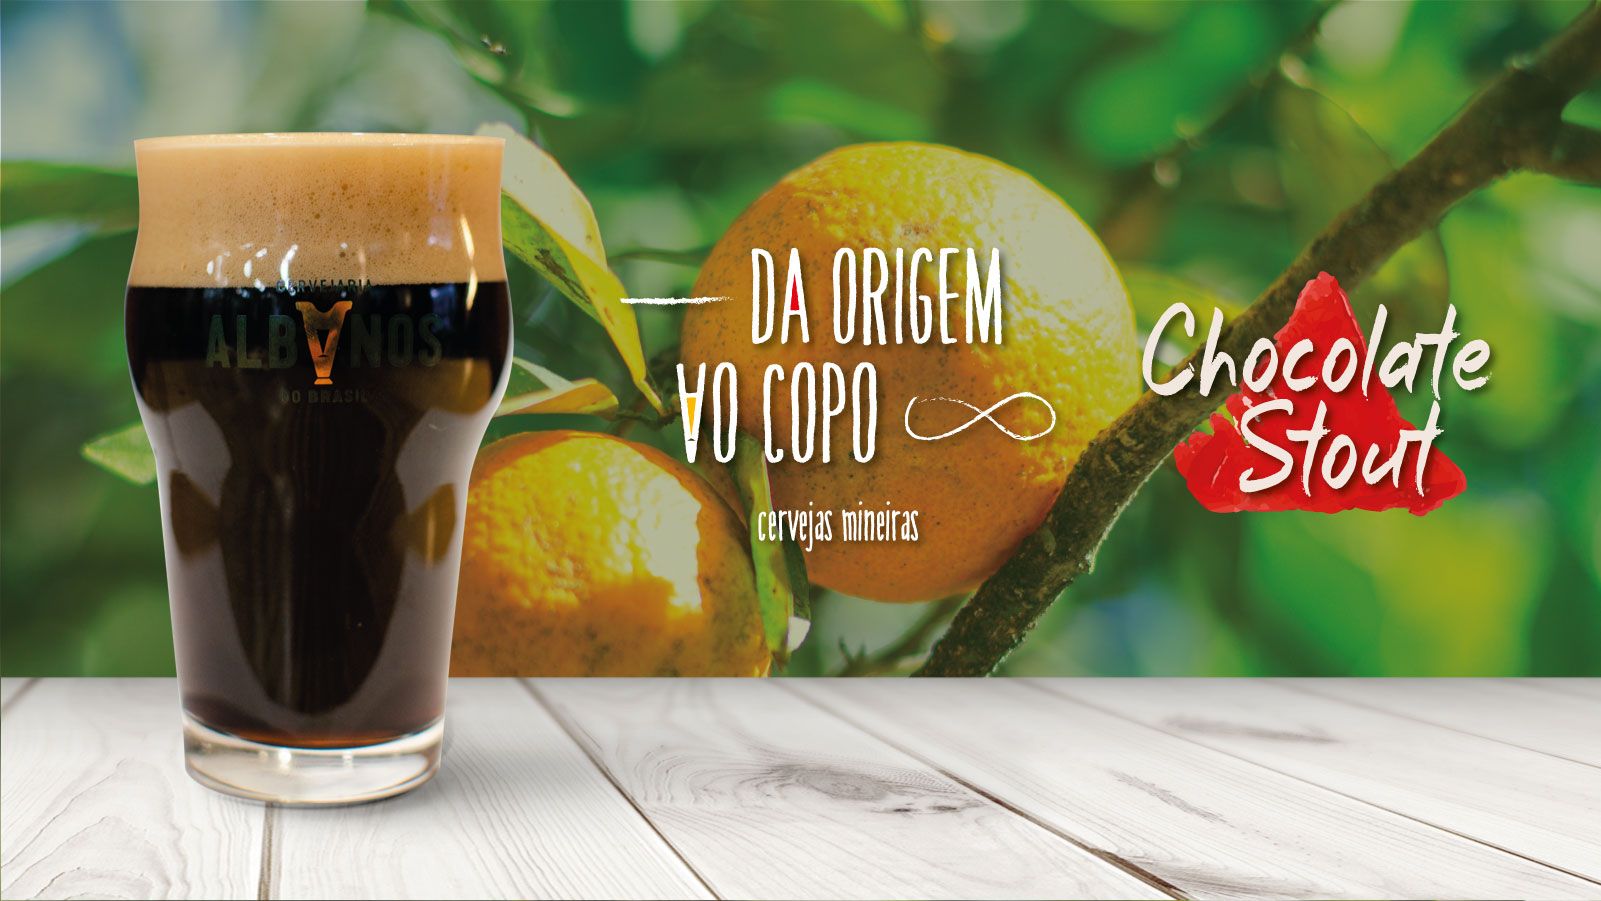 Da origem ao copo - Stout Chocolate -Albanos do Brasil